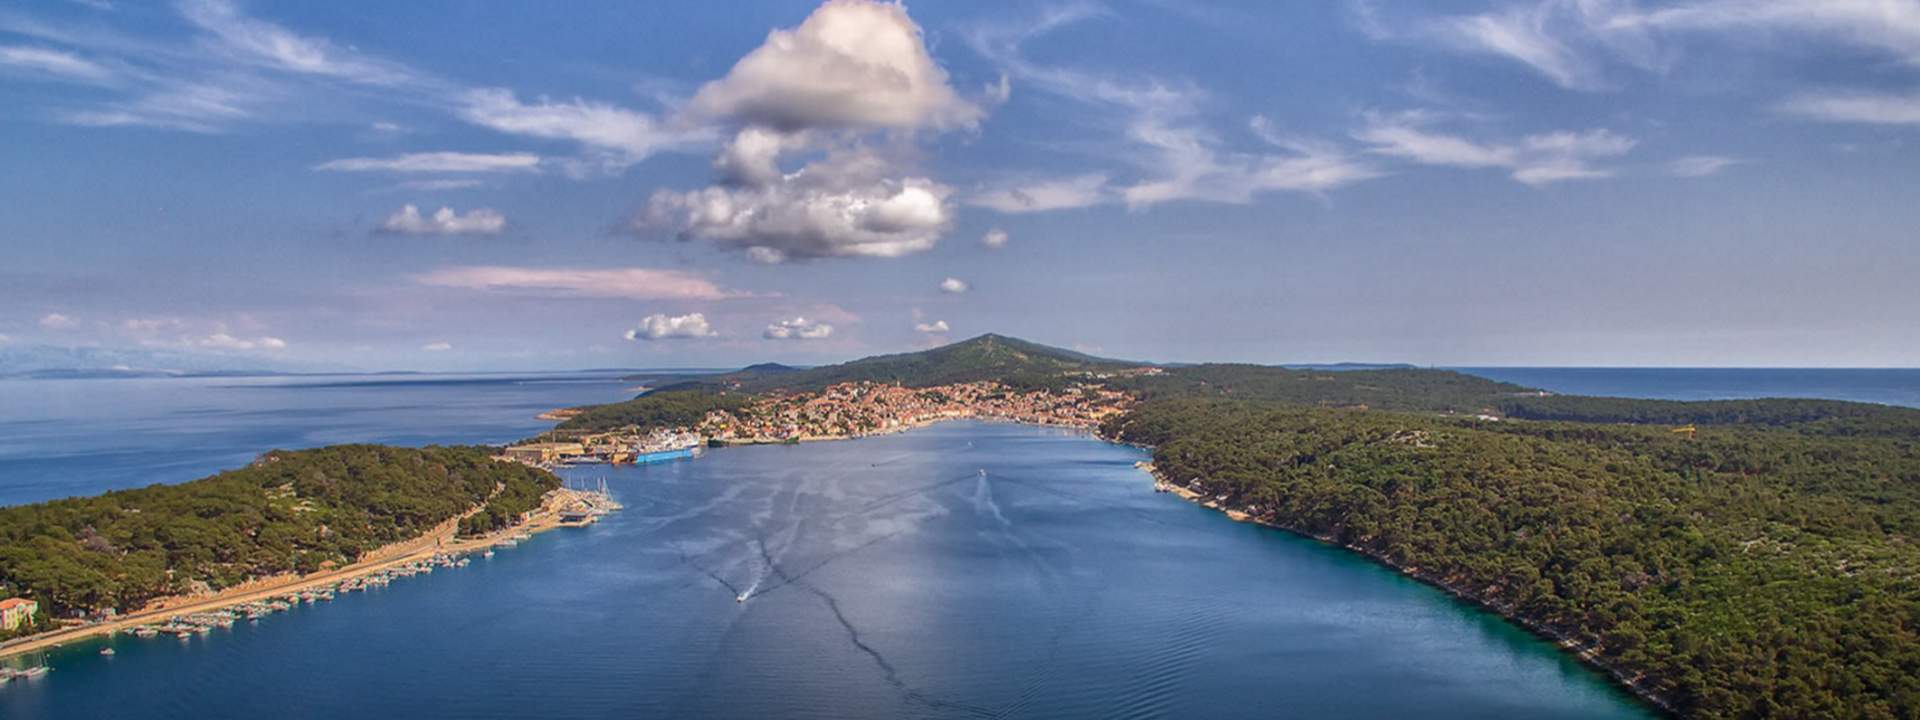 Отправляйтесь на катамаране к самым красивым хорватским островам